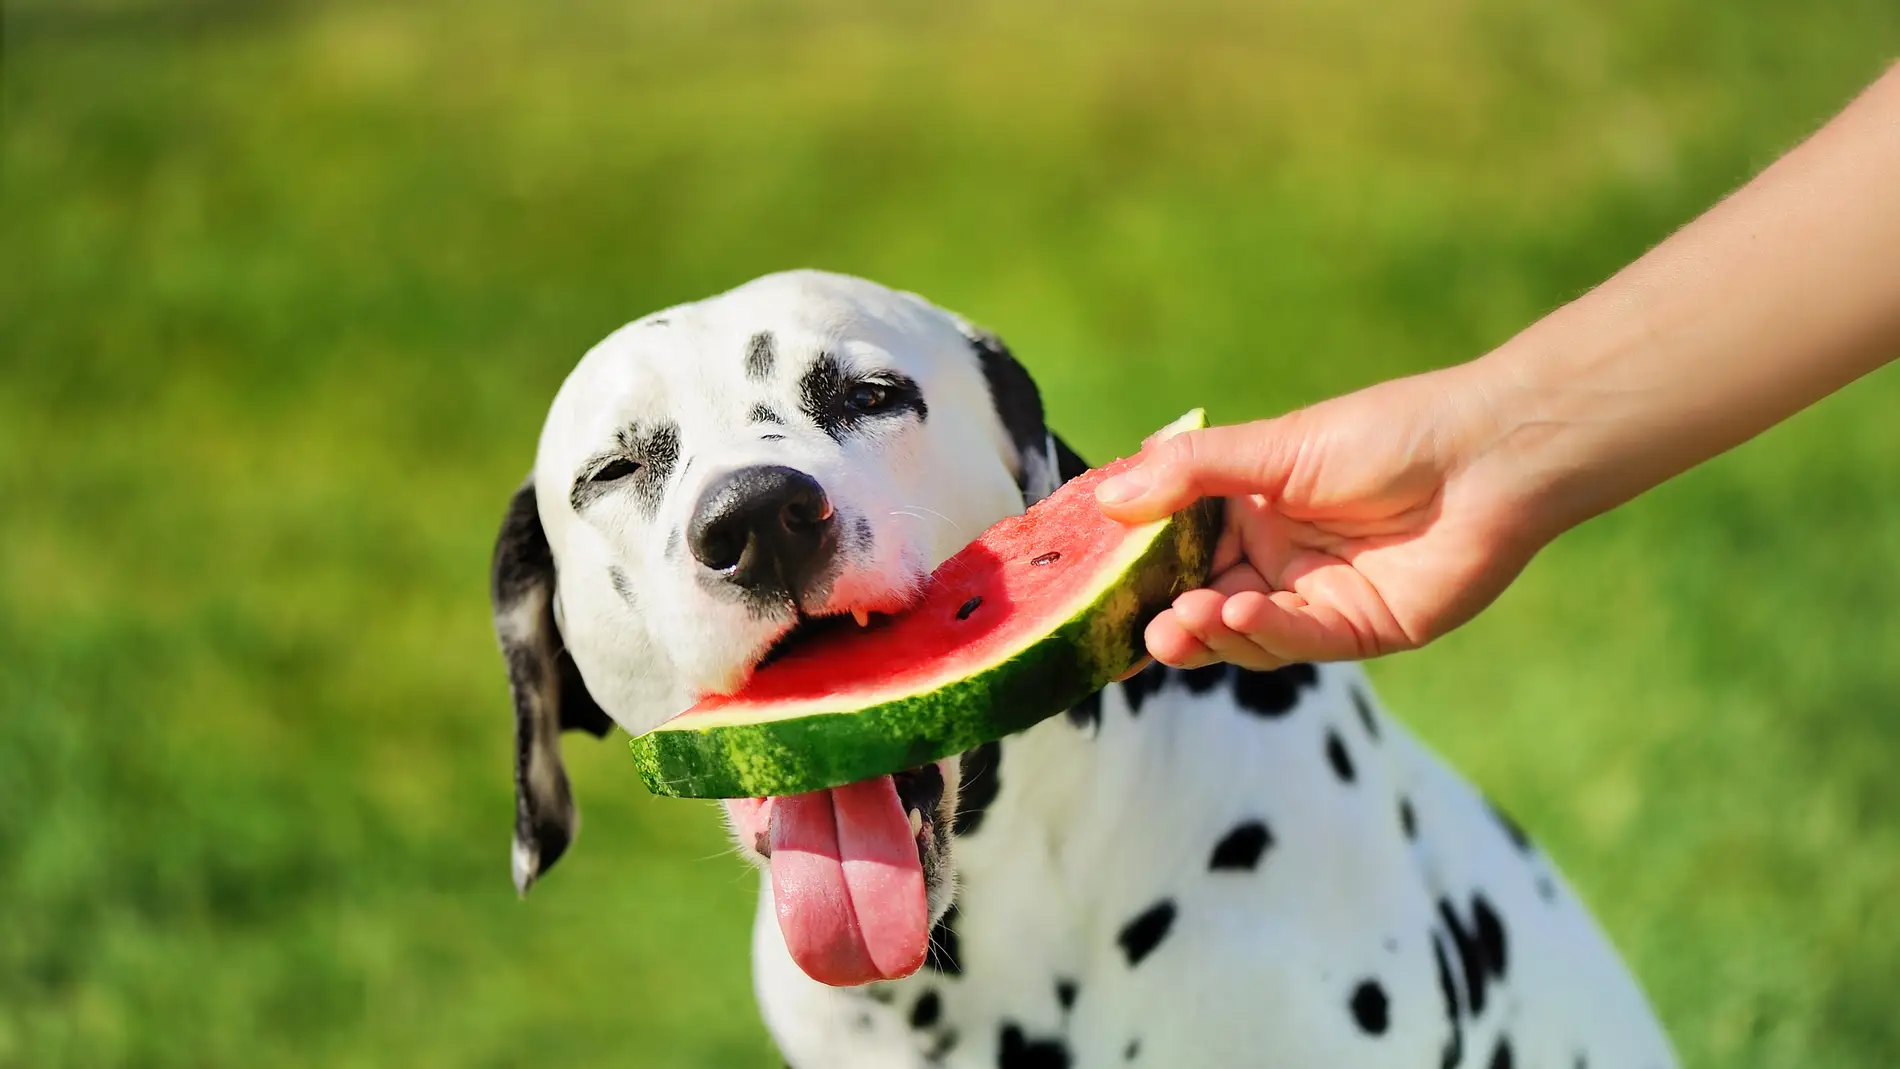 Qué frutas pueden comer los perros y cuáles son peligrosas para su salud